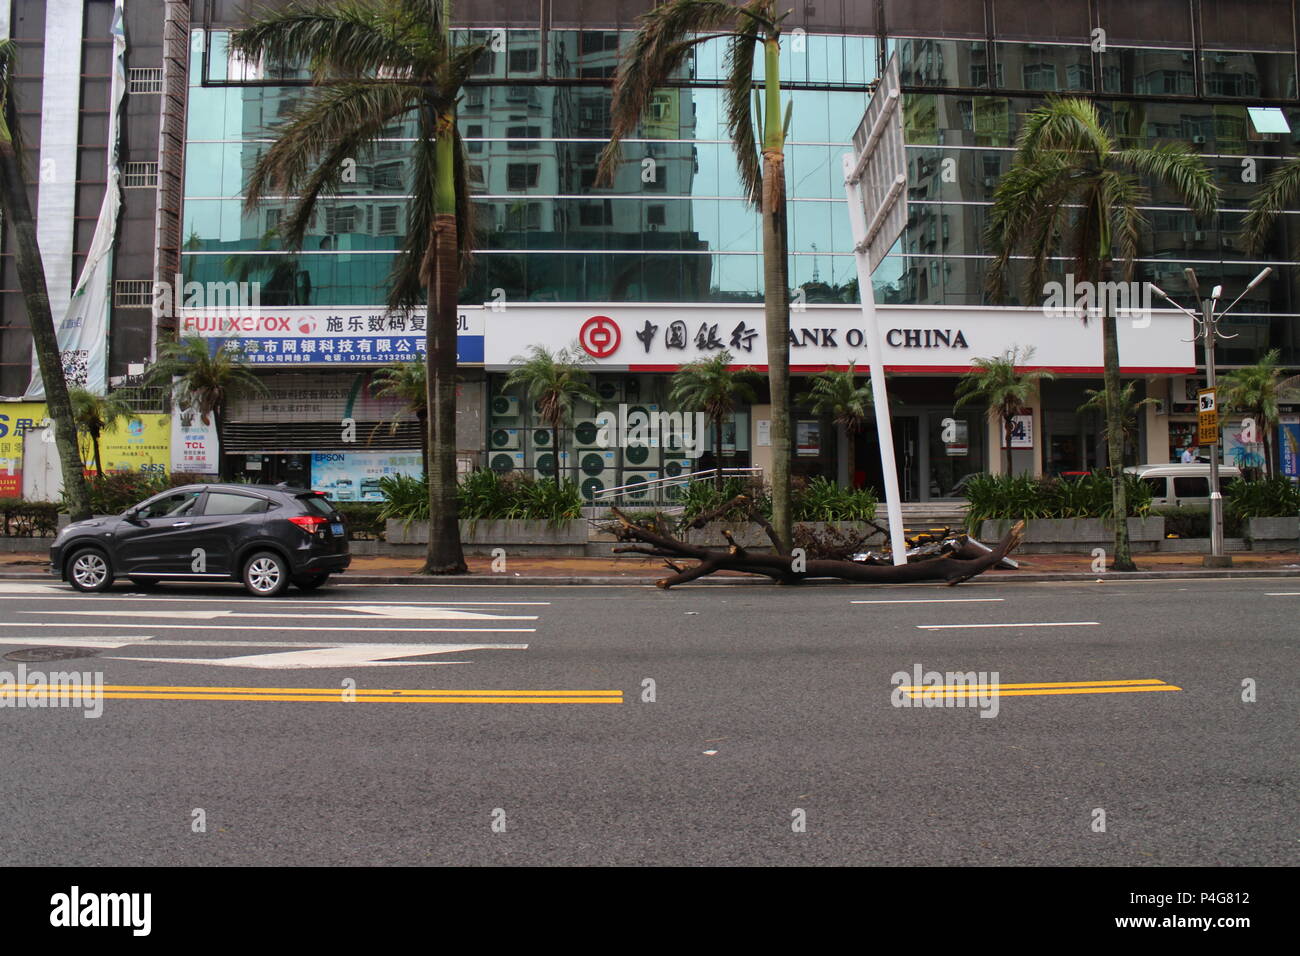 Zhuhai, Guangdong, Chine. Août 28, 2017. La rupture d'un arbre en face de la Banque de Chine.Hato typhon les côtes du sud de la Chine et le centre économique de Hong-Kong et Macao, tuant 12 personnes et causant de graves dégâts matériels estimés à US$ 1,42 milliards de dollars. Ces photos ont été prises dans le quartier résidentiel et commerçant de Wanzai sha à Zhuhai, une ville côtière à la frontière avec Hong Kong. Il montre de façon concrète l'étendue des destructions, mais aussi la capacité de résilience de Zhuhai, habitants qui ont immédiatement repris leurs activités quotidiennes dès que le typhon s'est calmée. (Crédit Banque D'Images